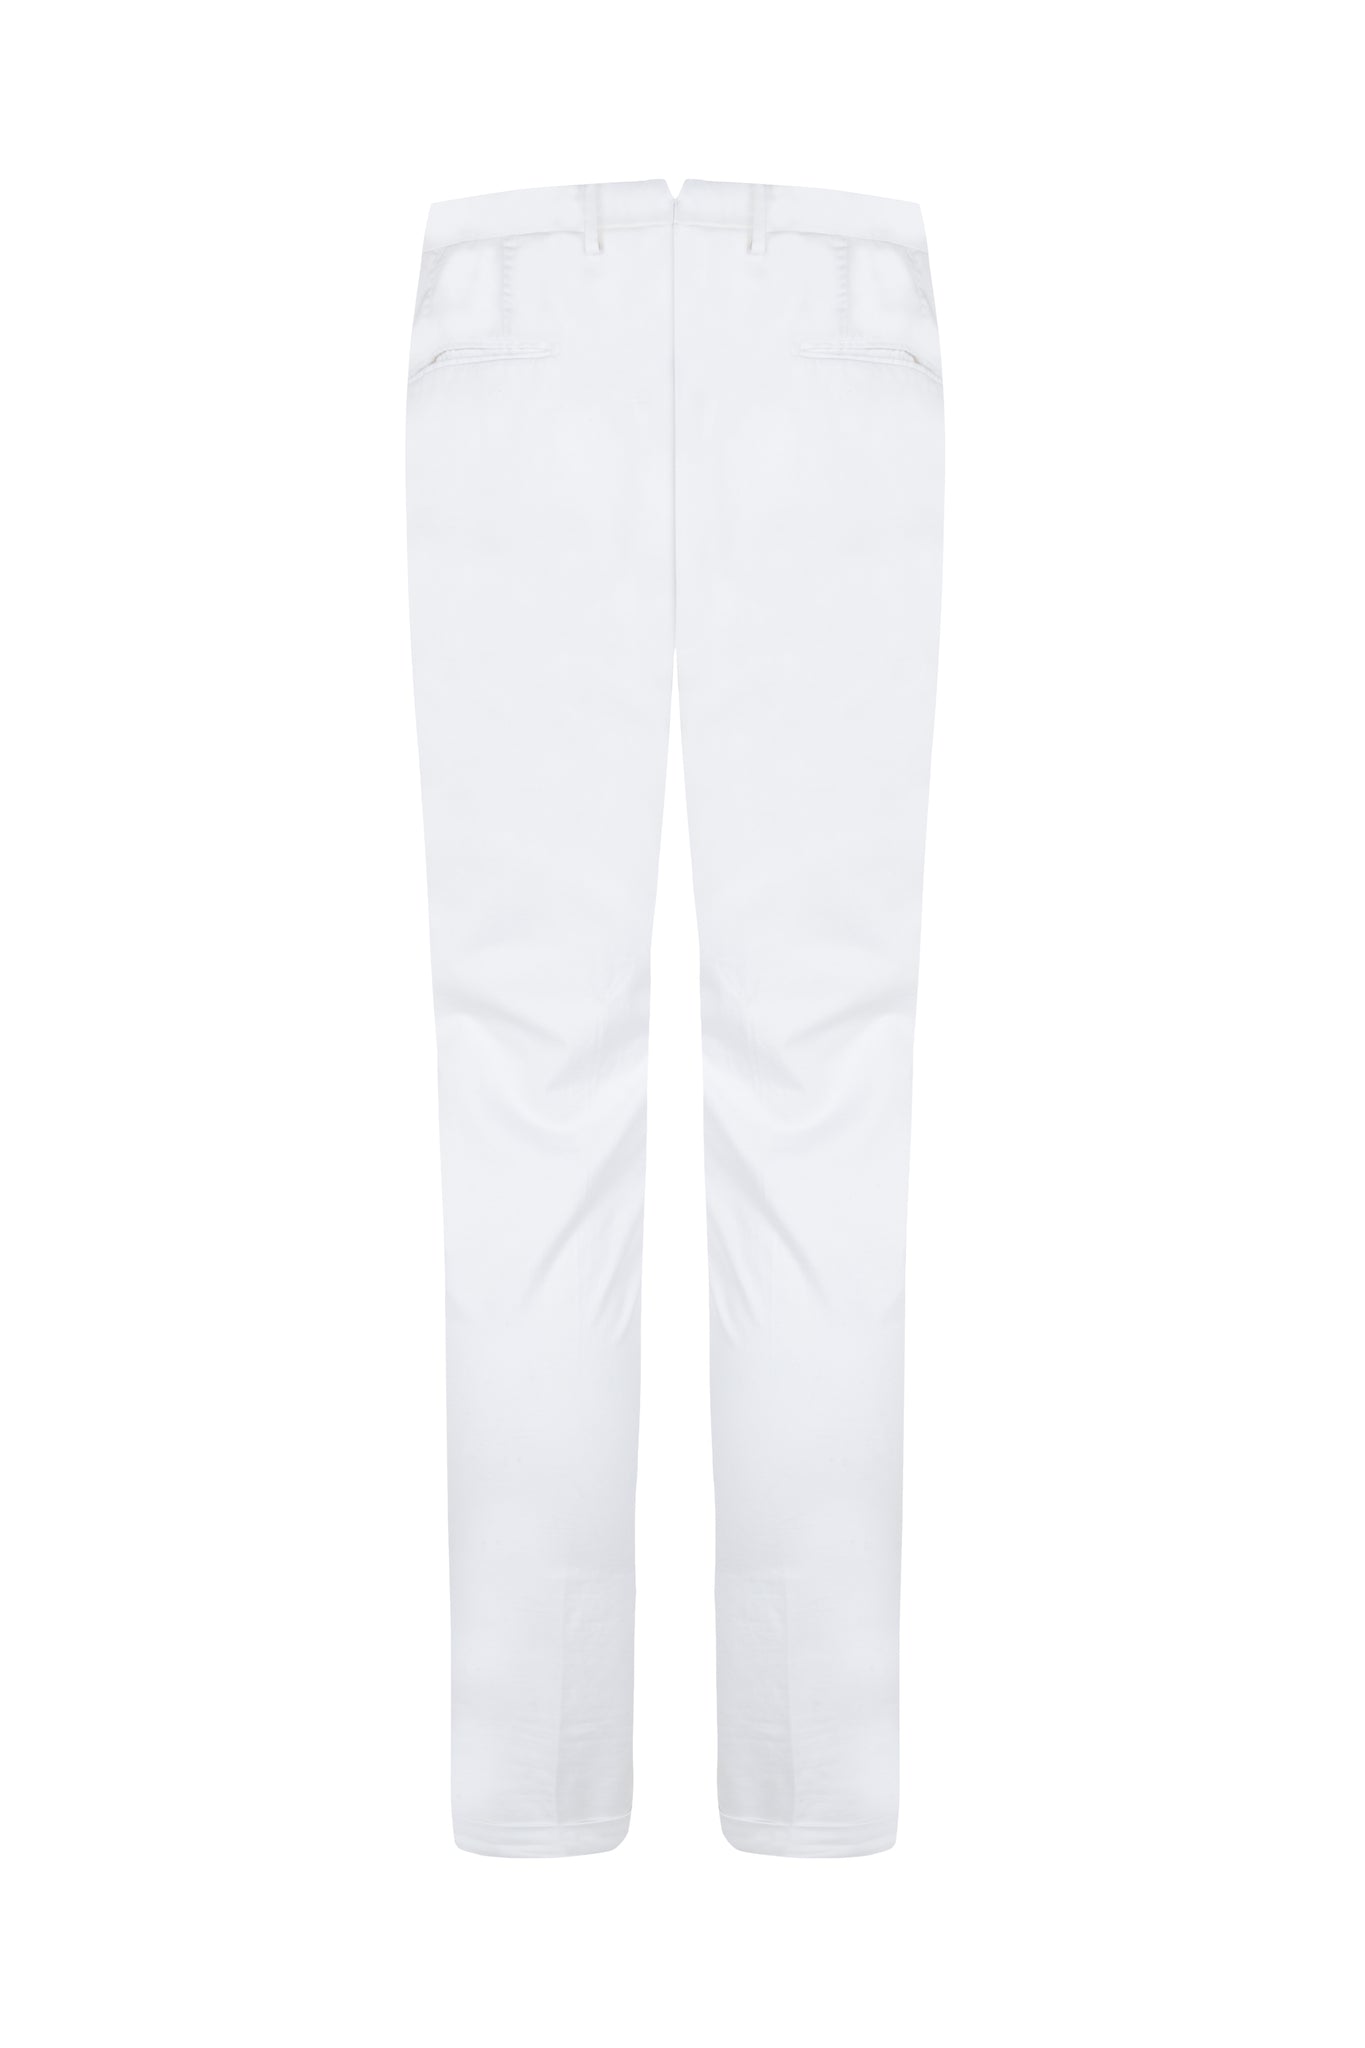 Pantalon algodon chino